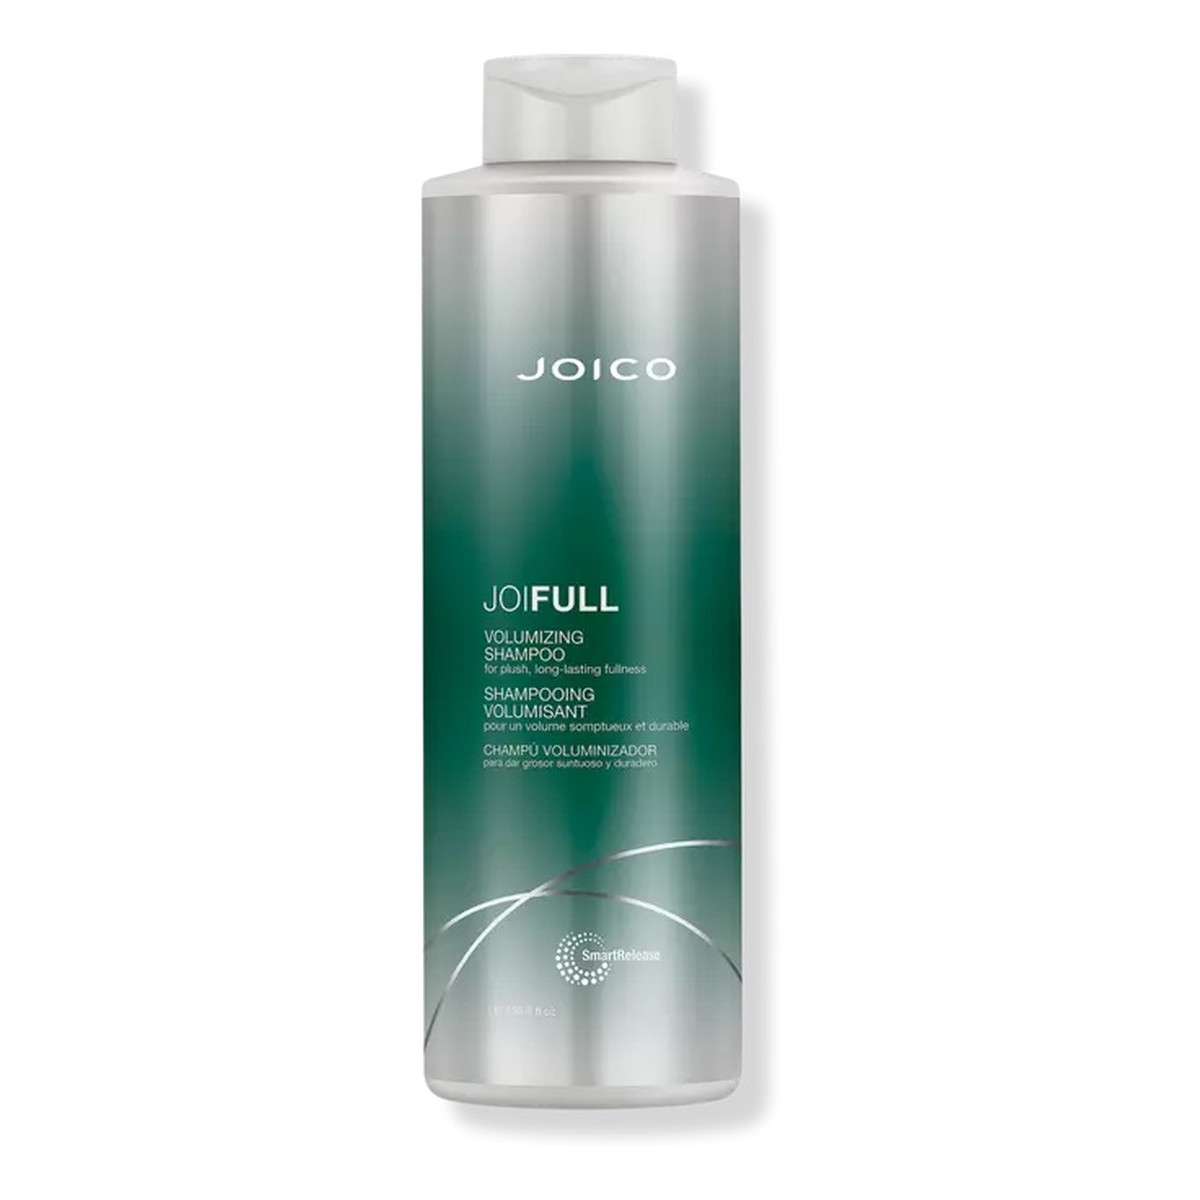 Joico Joifull volumizing shampoo szampon nadający włosom objętości 1000ml